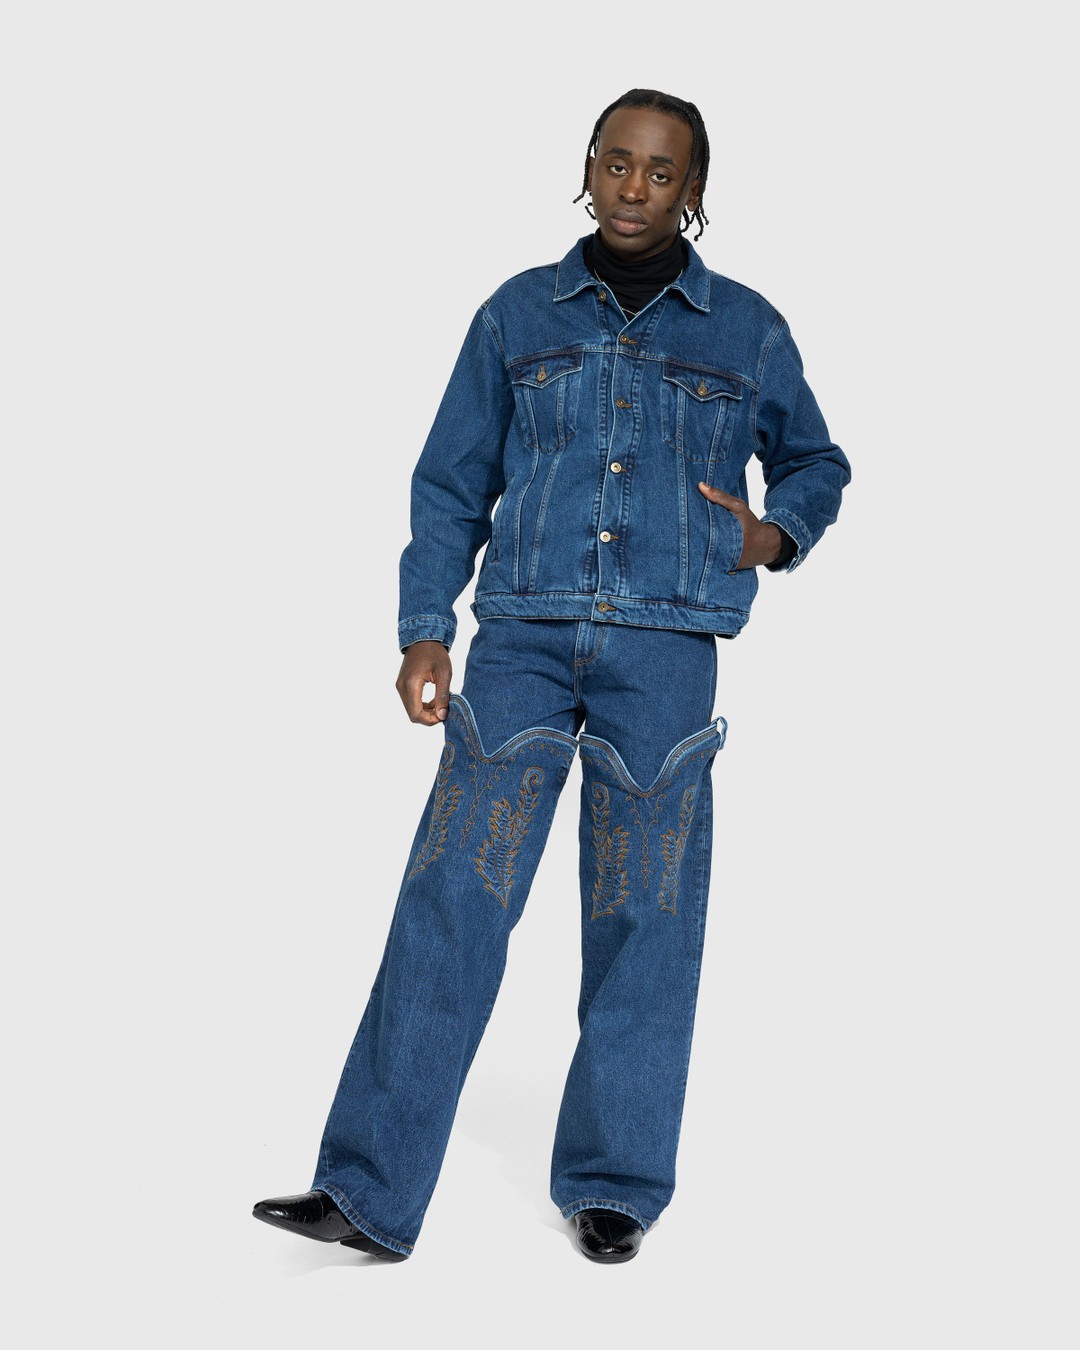 y/project cowboy cuff jeans 25 デニム - デニム/ジーンズ